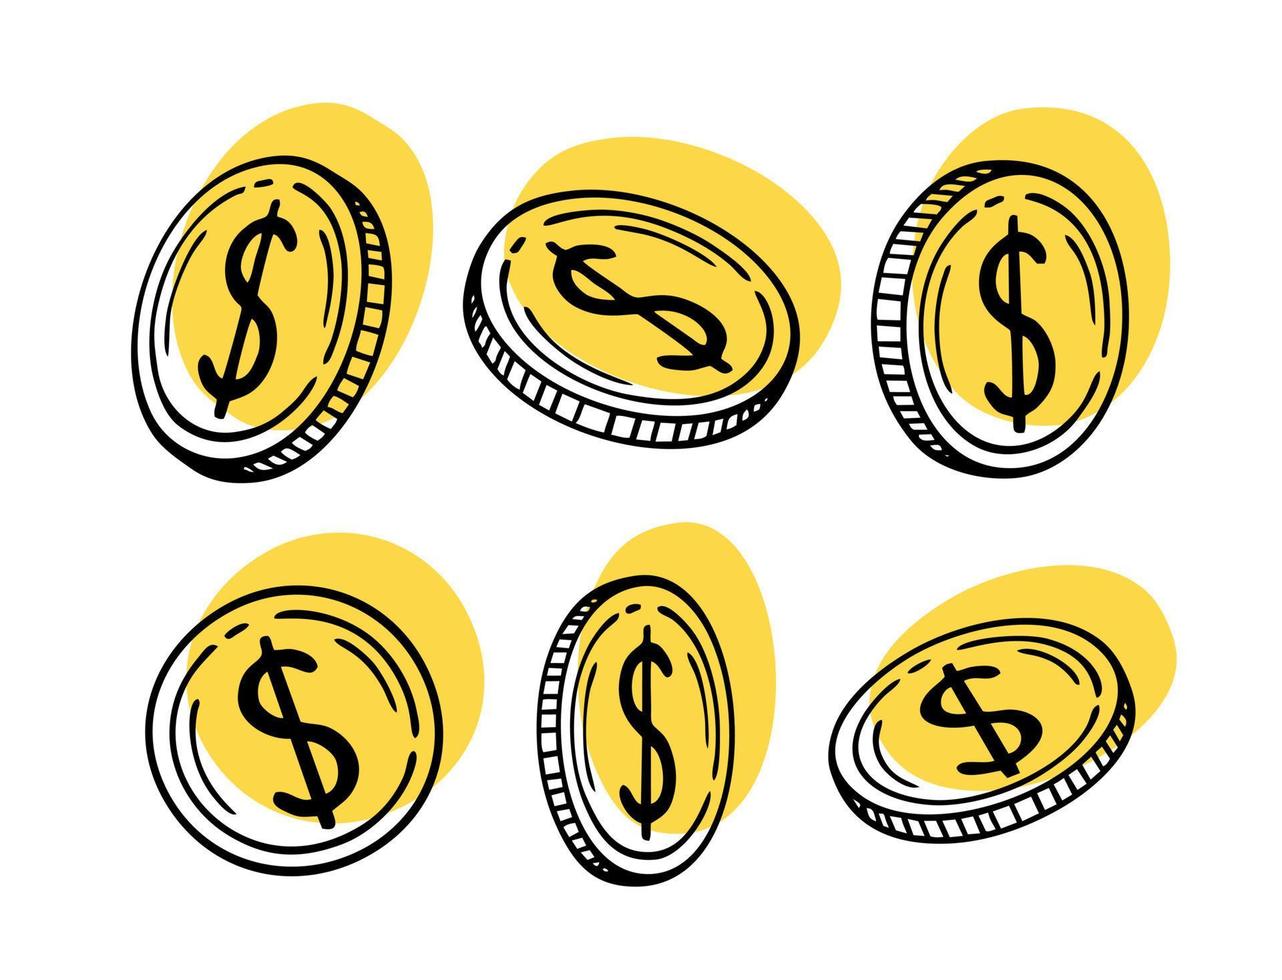 den amerikanska dollarn. amerikansk valuta på en vit bakgrund. vektor illustration av en doodle.